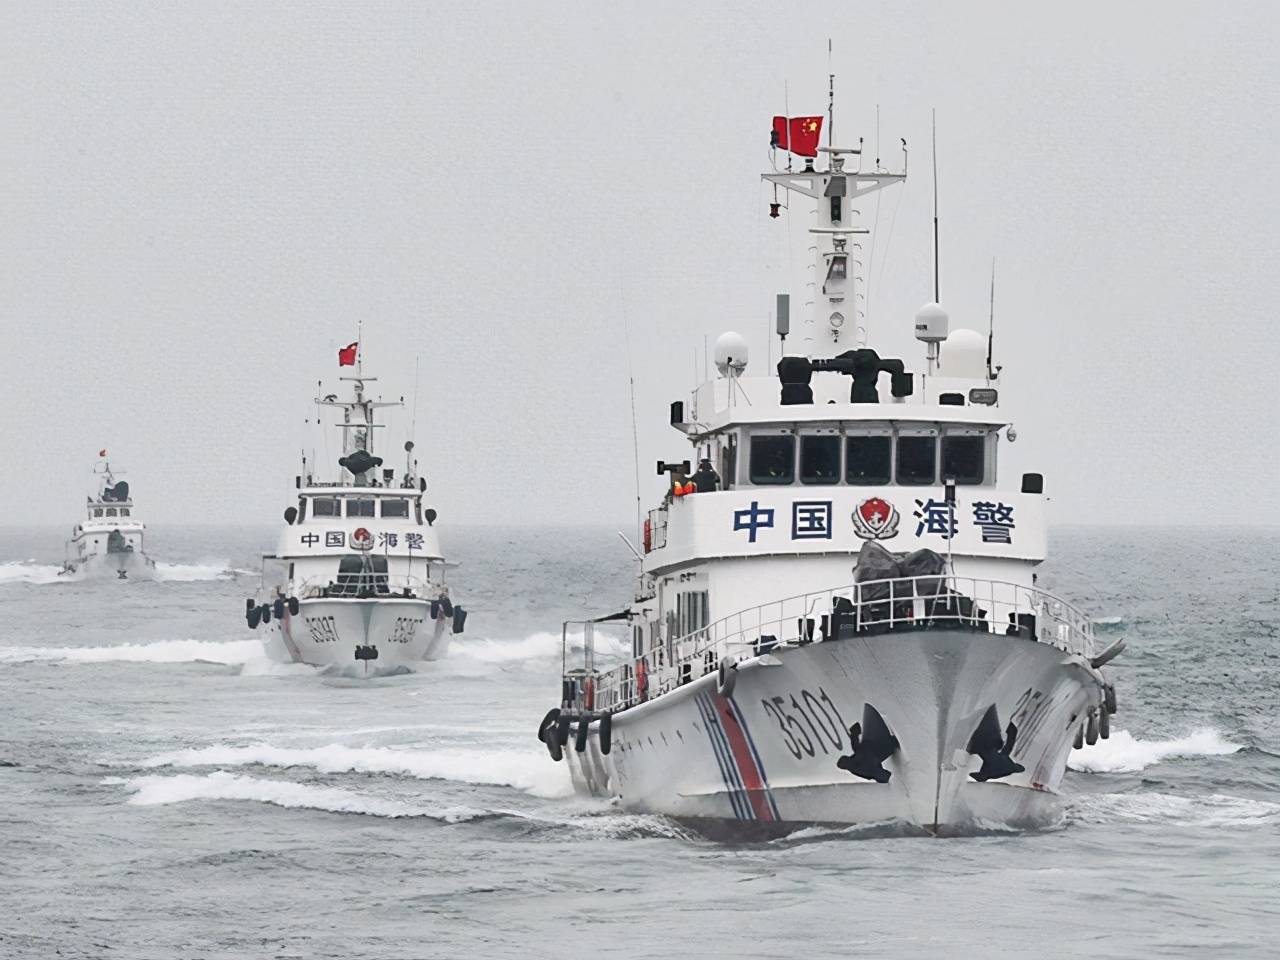 原创海警法实施后首次中国海警船巡航钓鱼岛日媒慌了